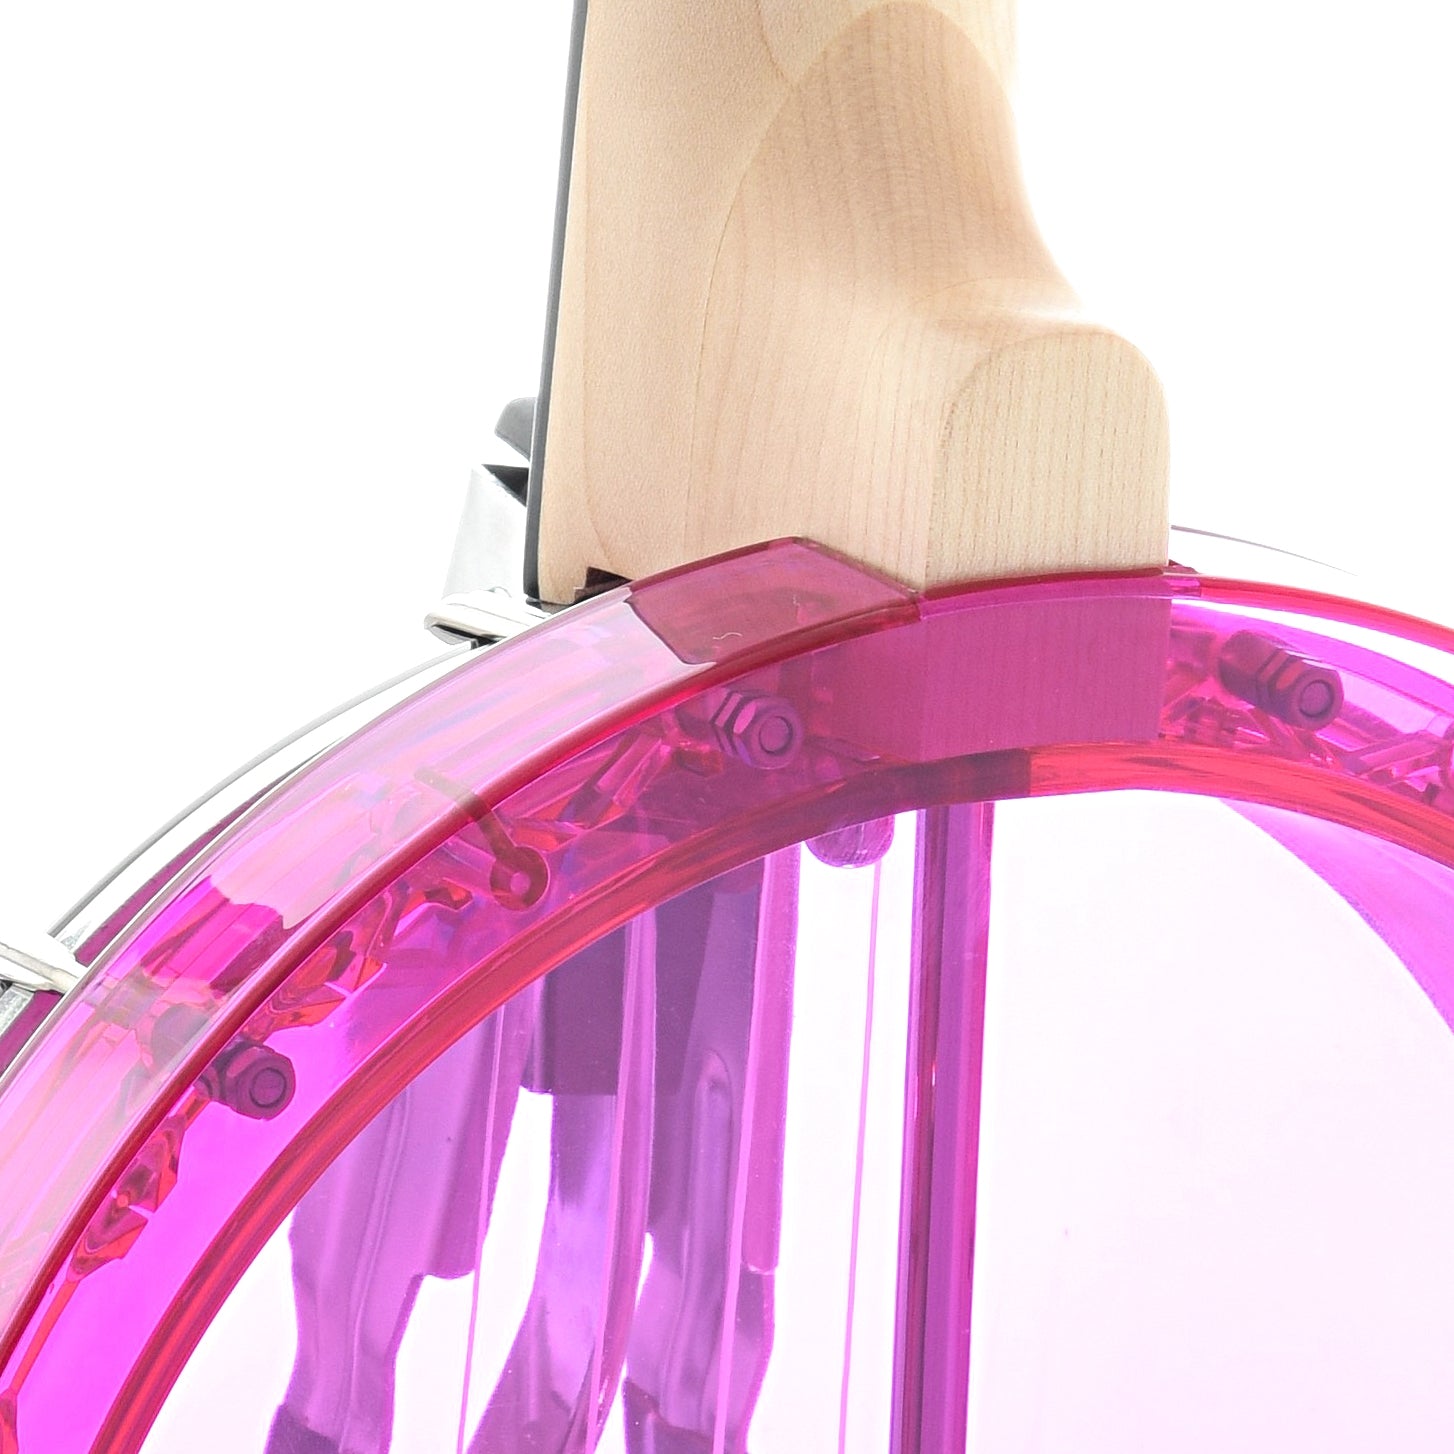 Image 8 of Gold Tone Little Gem Banjo Ukulele & Gigbag, Amethyst (purple) - SKU# LGEM-PUR : Product Type Banjo Ukuleles : Elderly Instruments